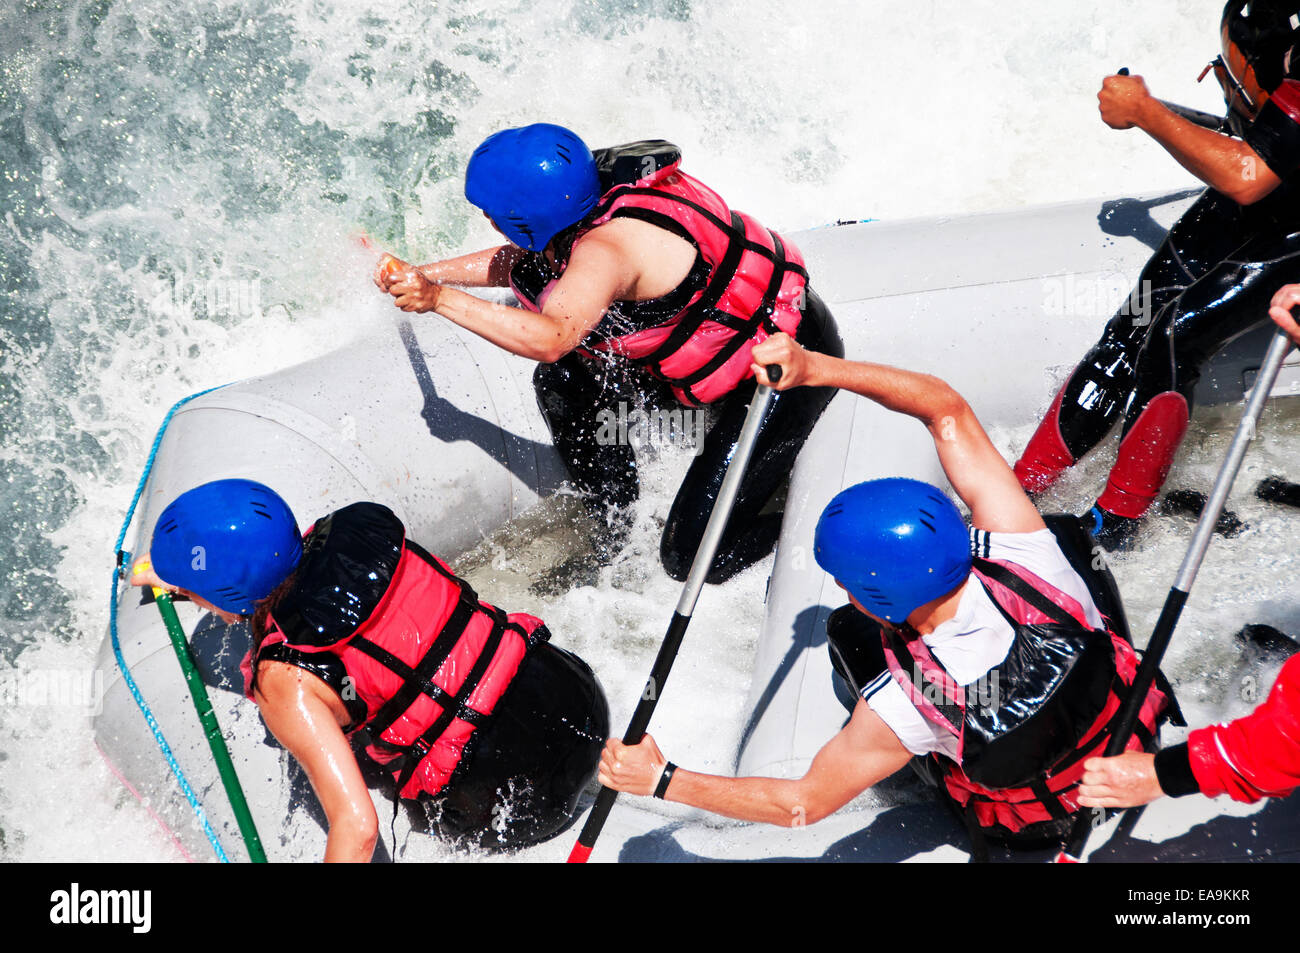 Rafting como deporte y diversión extrema Foto de stock